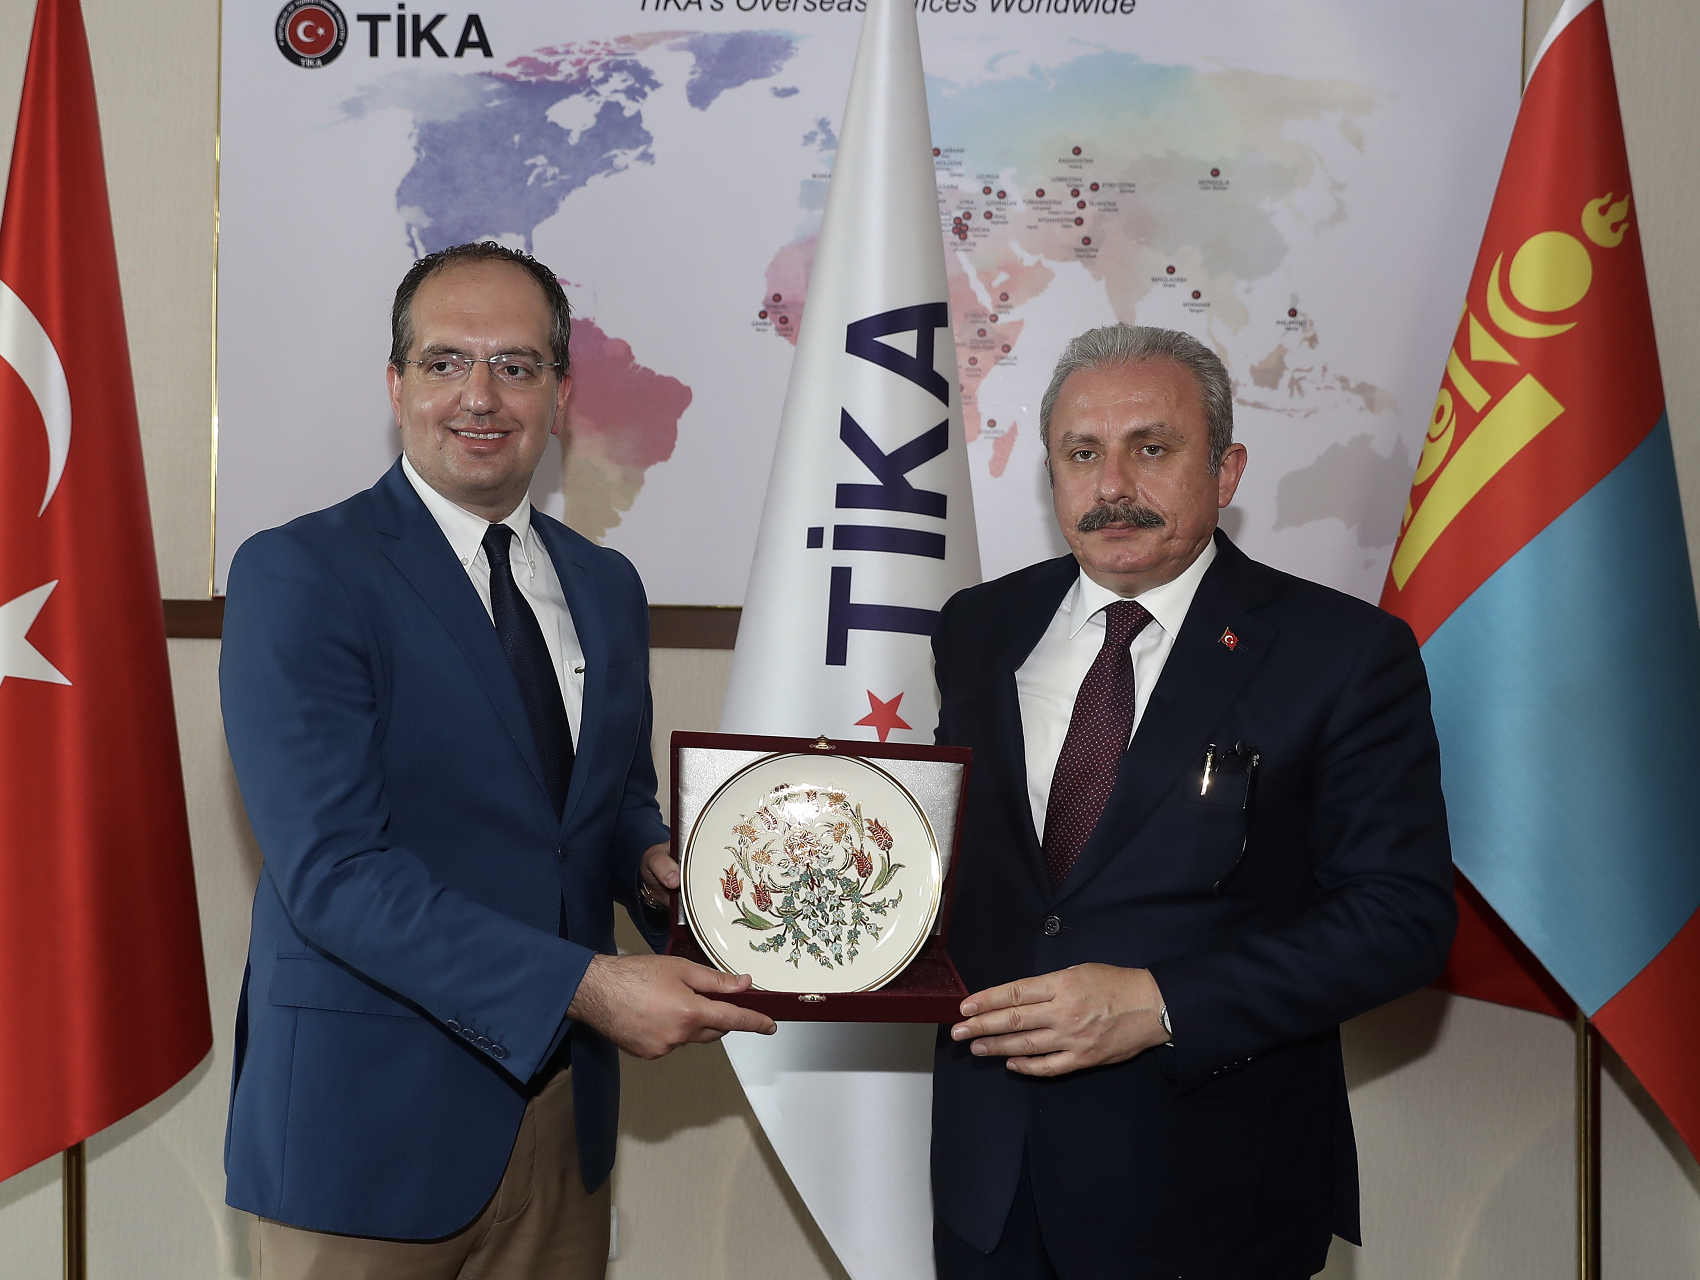 القوة الناعمة لوكالة التعاون والتنسيق التركية (تيكا): السمة الوطنية في السياسة الخارجية التركية